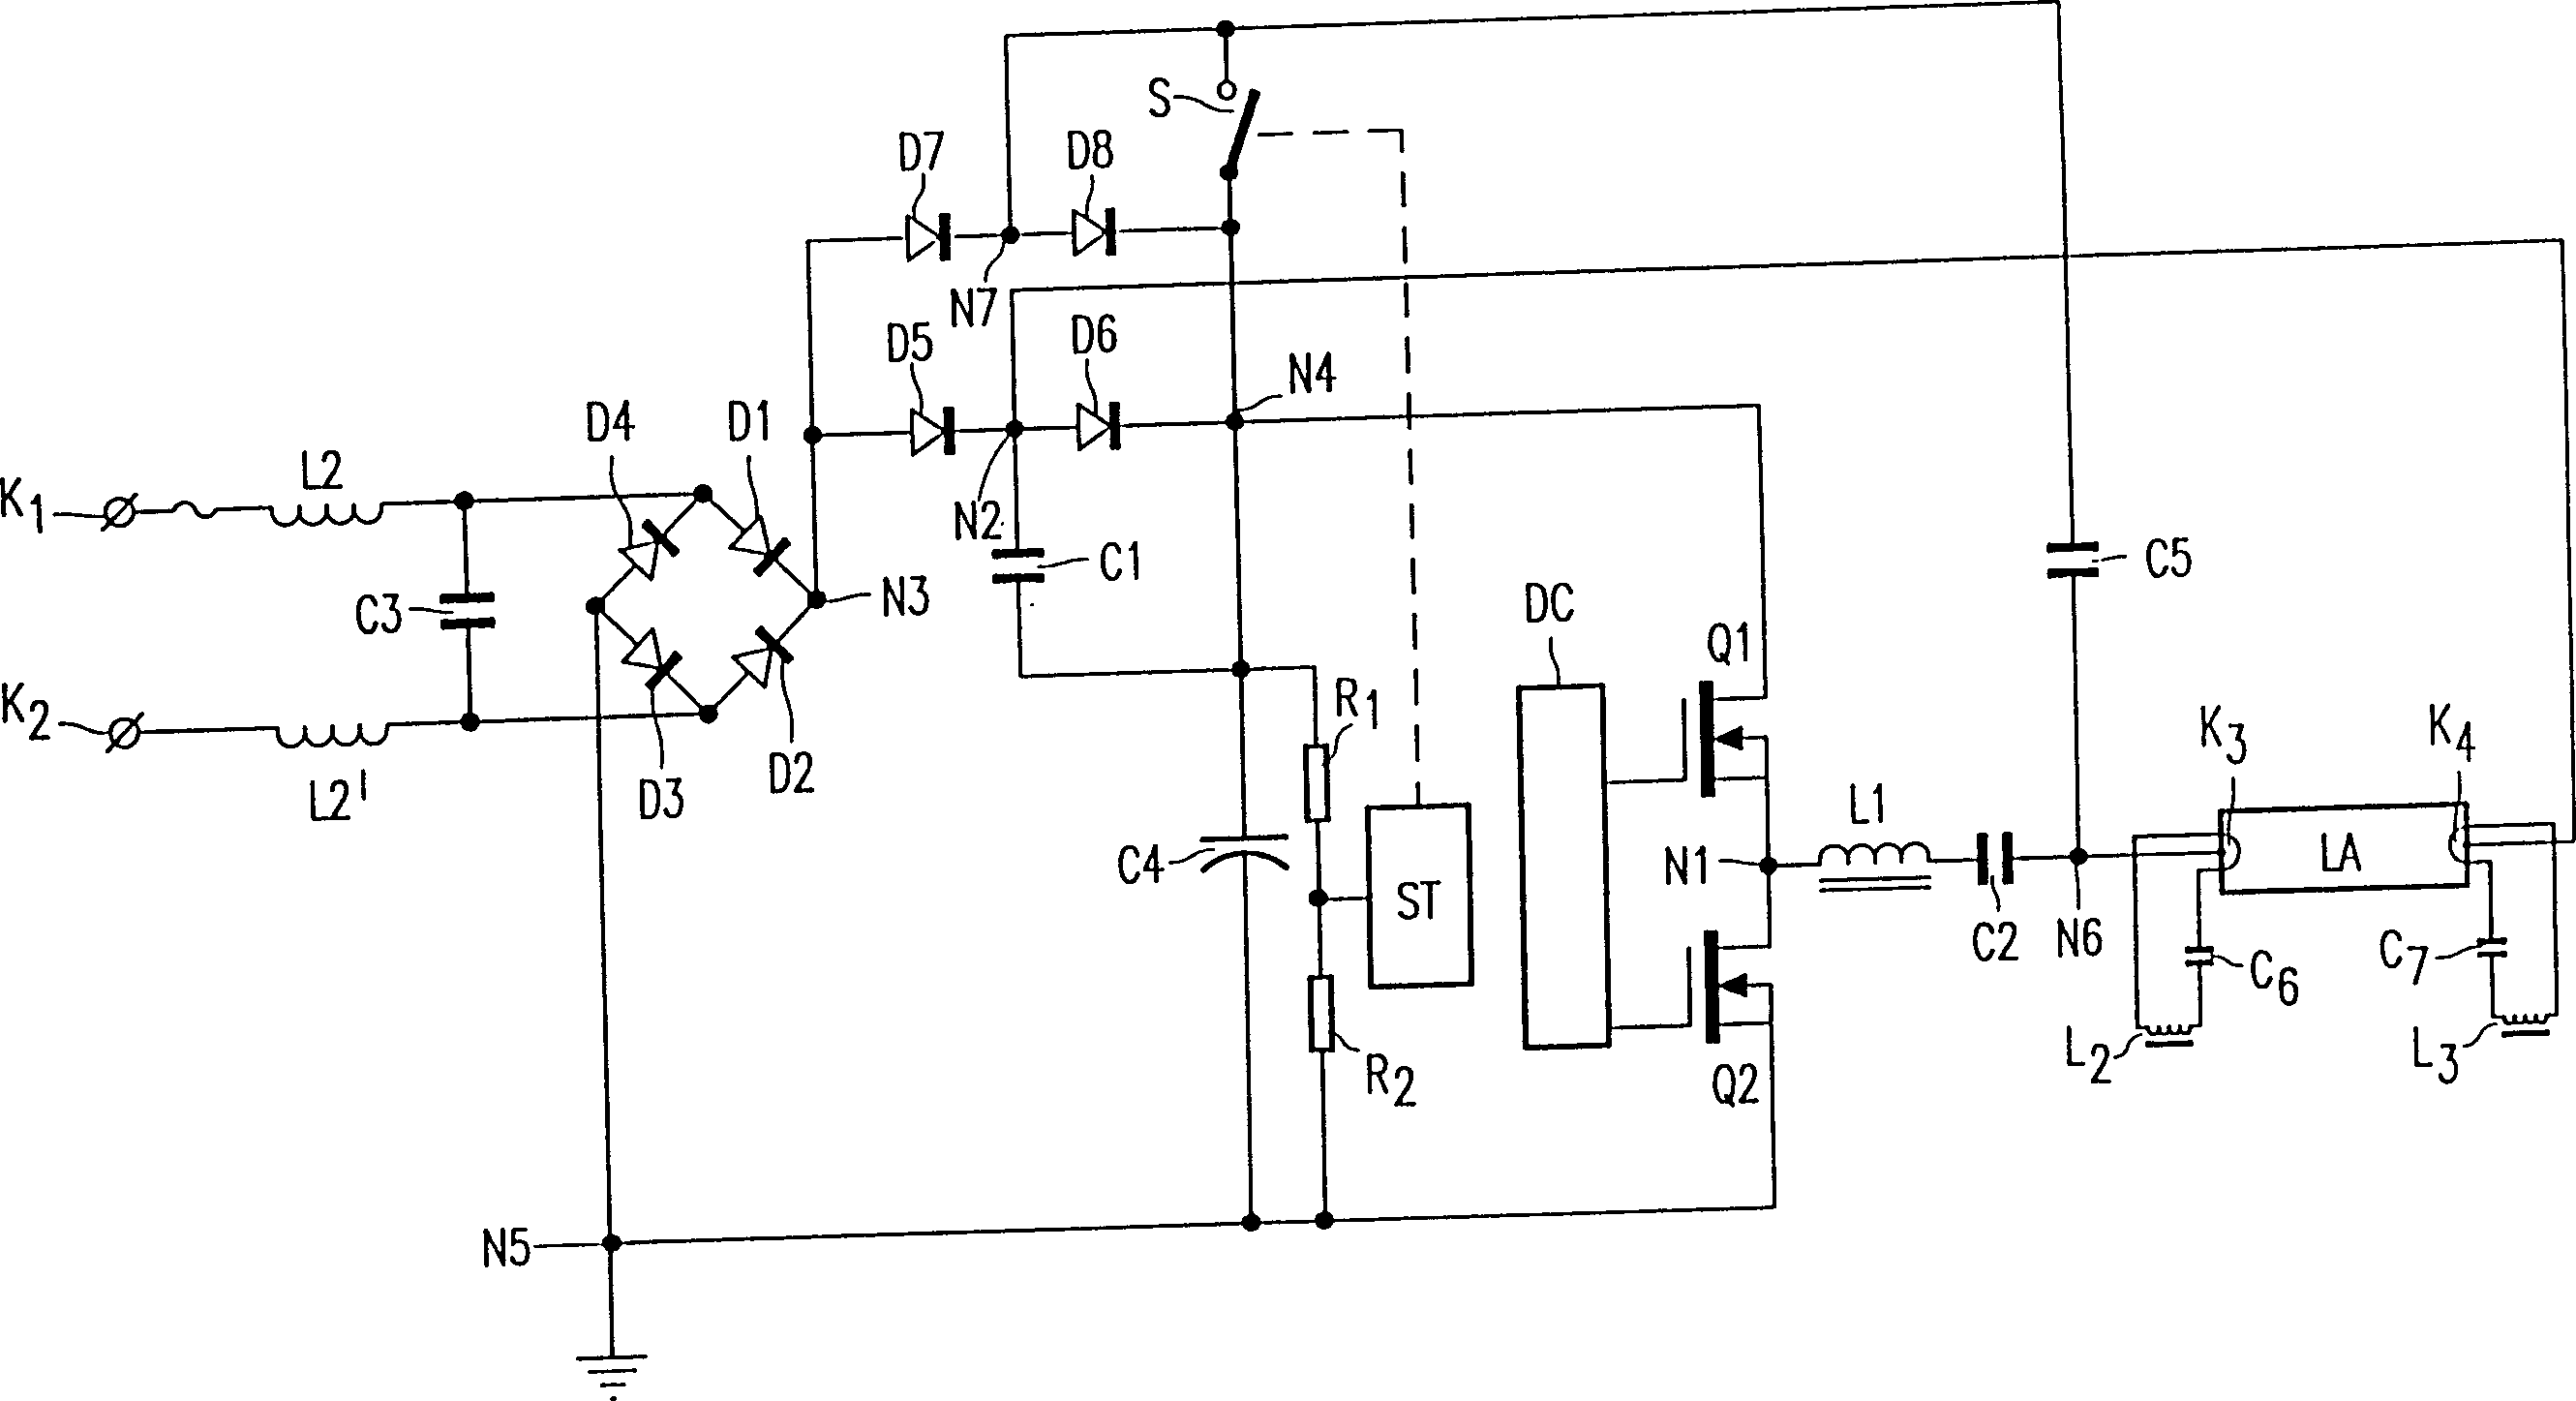 Circuit device